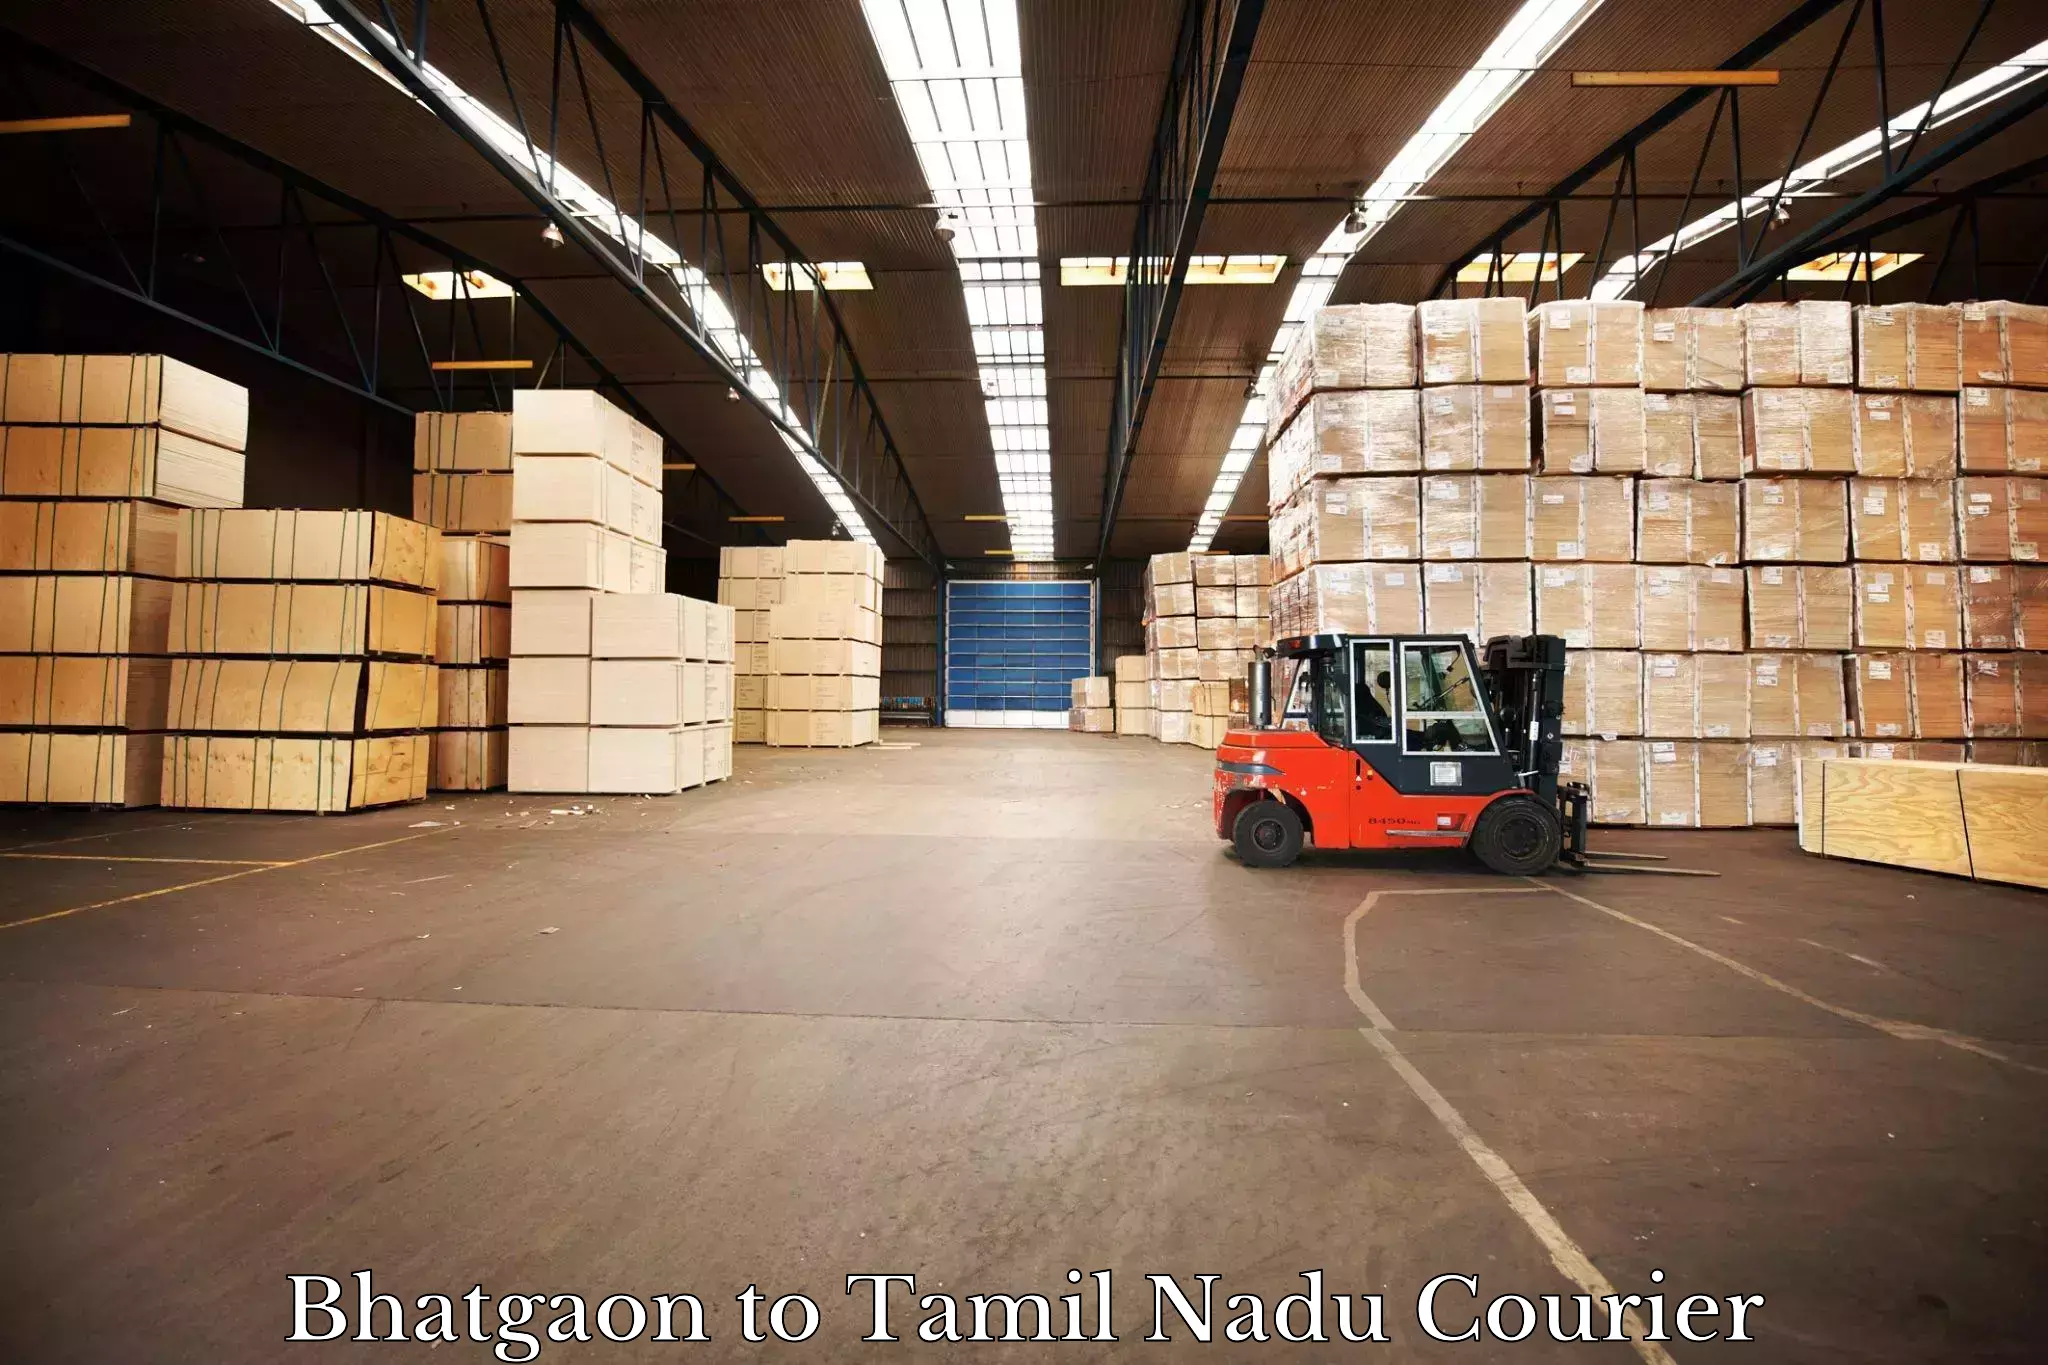 Secure shipping methods Bhatgaon to Avadi